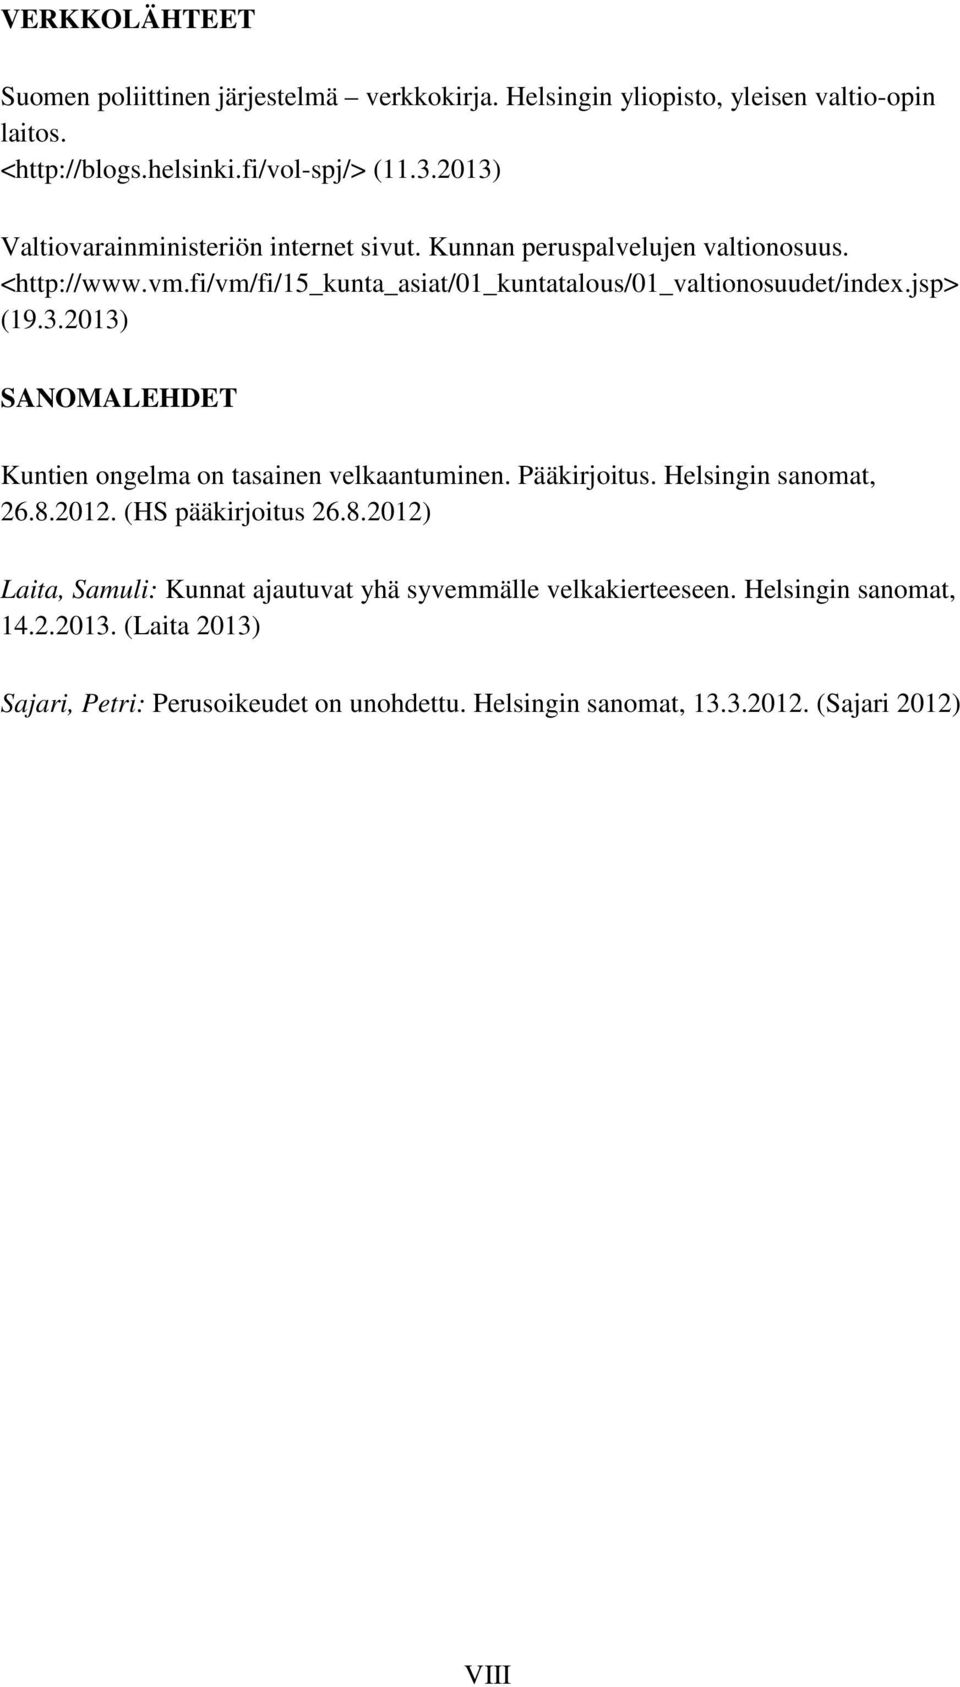 jsp> (19.3.2013) SANOMALEHDET Kuntien ongelma on tasainen velkaantuminen. Pääkirjoitus. Helsingin sanomat, 26.8.